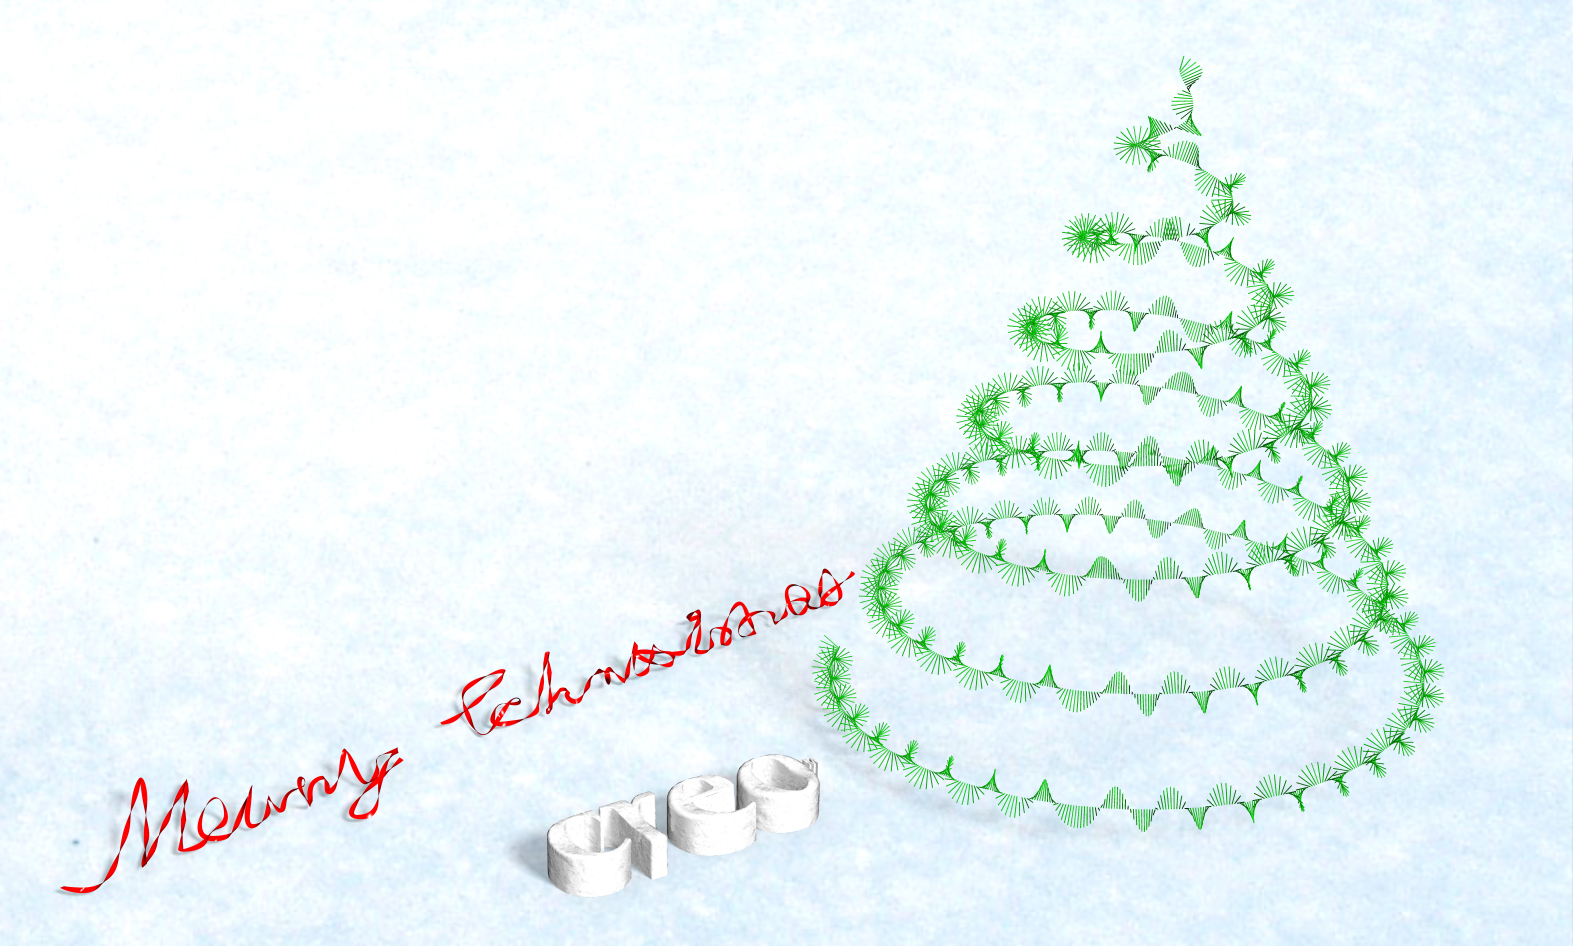 Merry Christmas_Creo Parametric.jpg